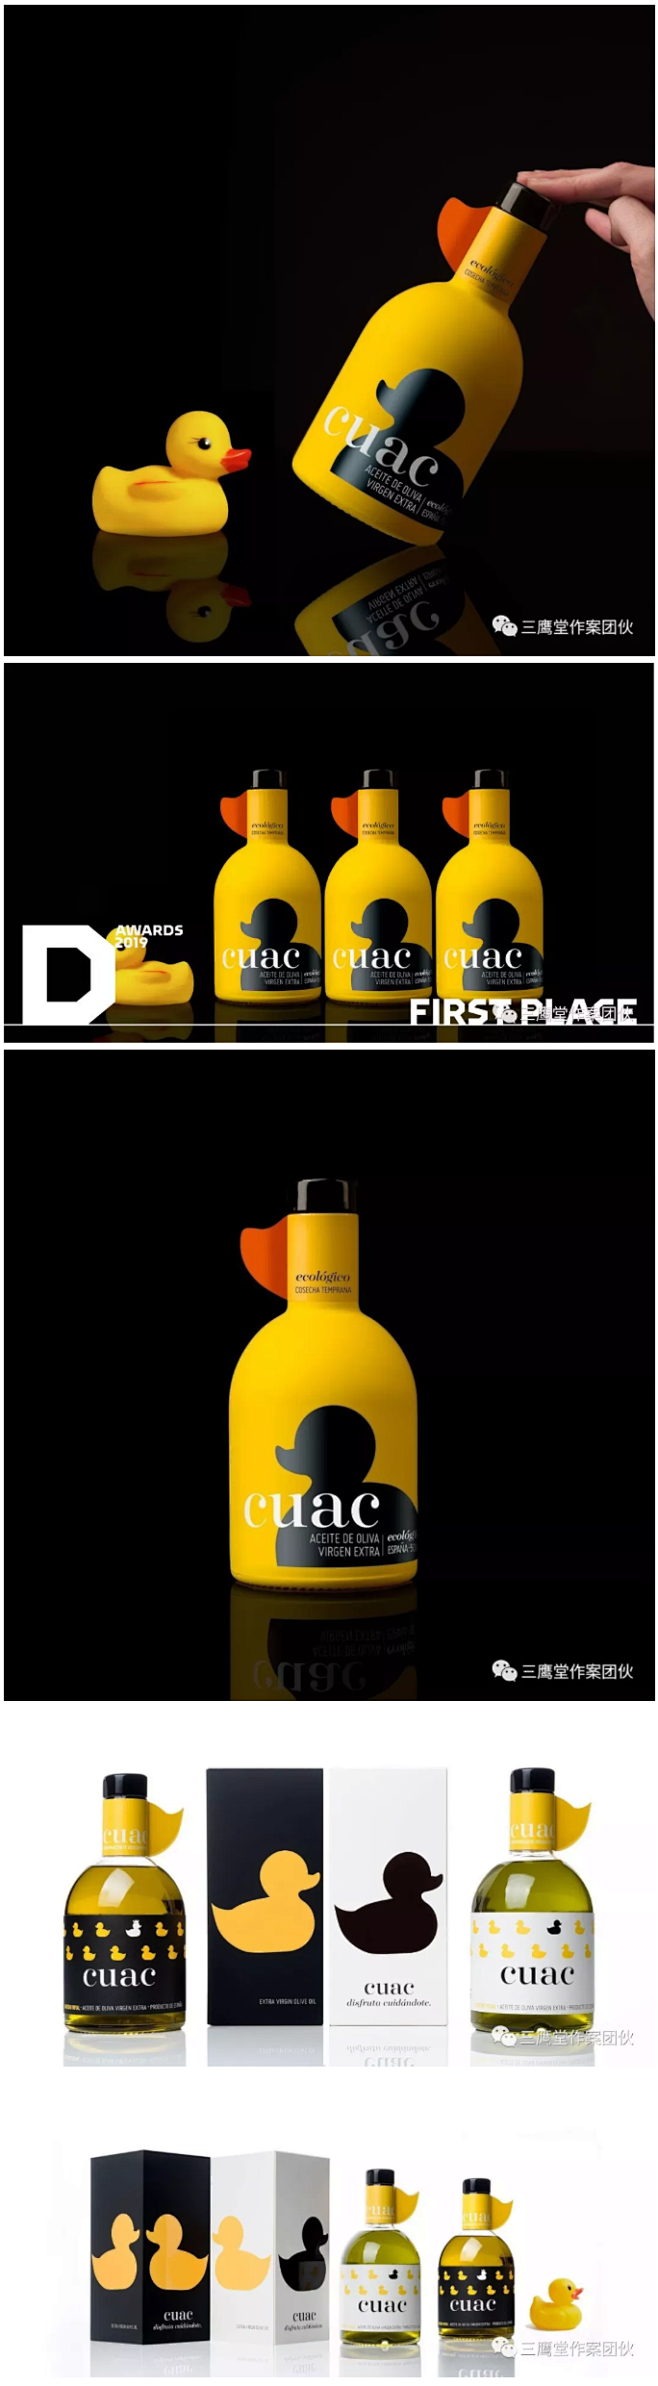 全球最大的包装设计奖Dieline Aw...